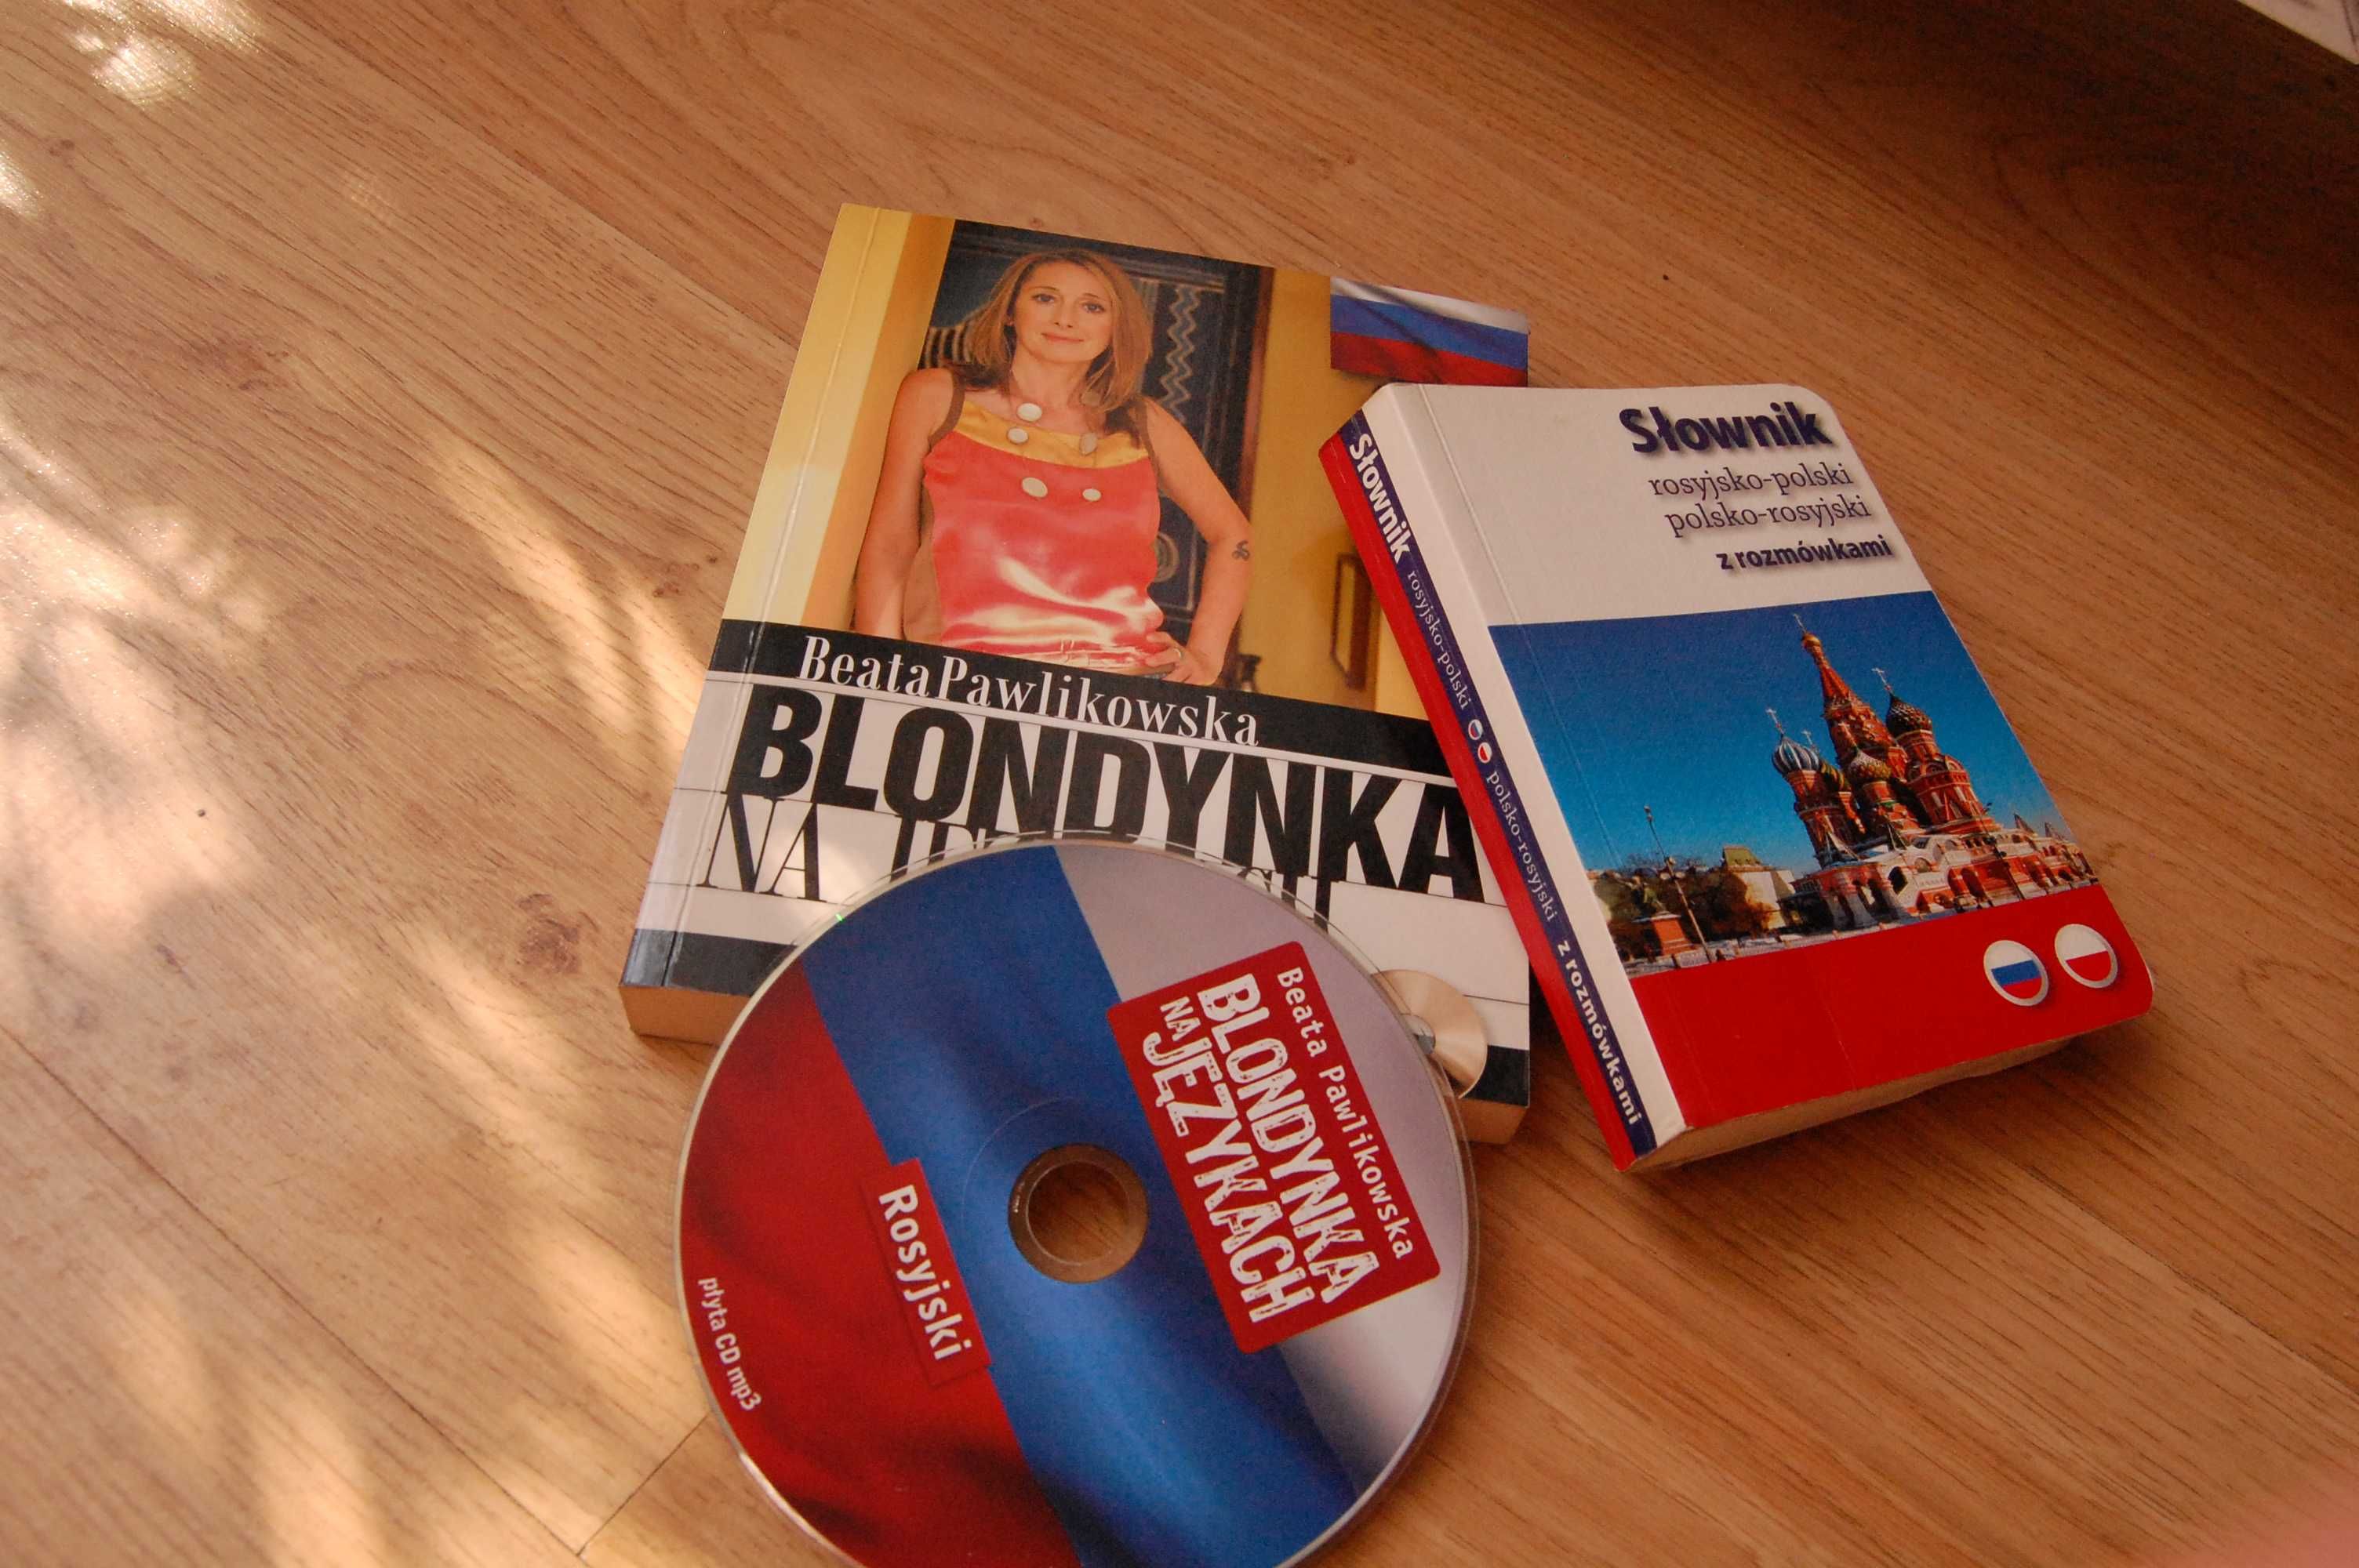 Pawlikowska.Rosyjski.Blondynka na językach,płytaCDmp3+ słownik